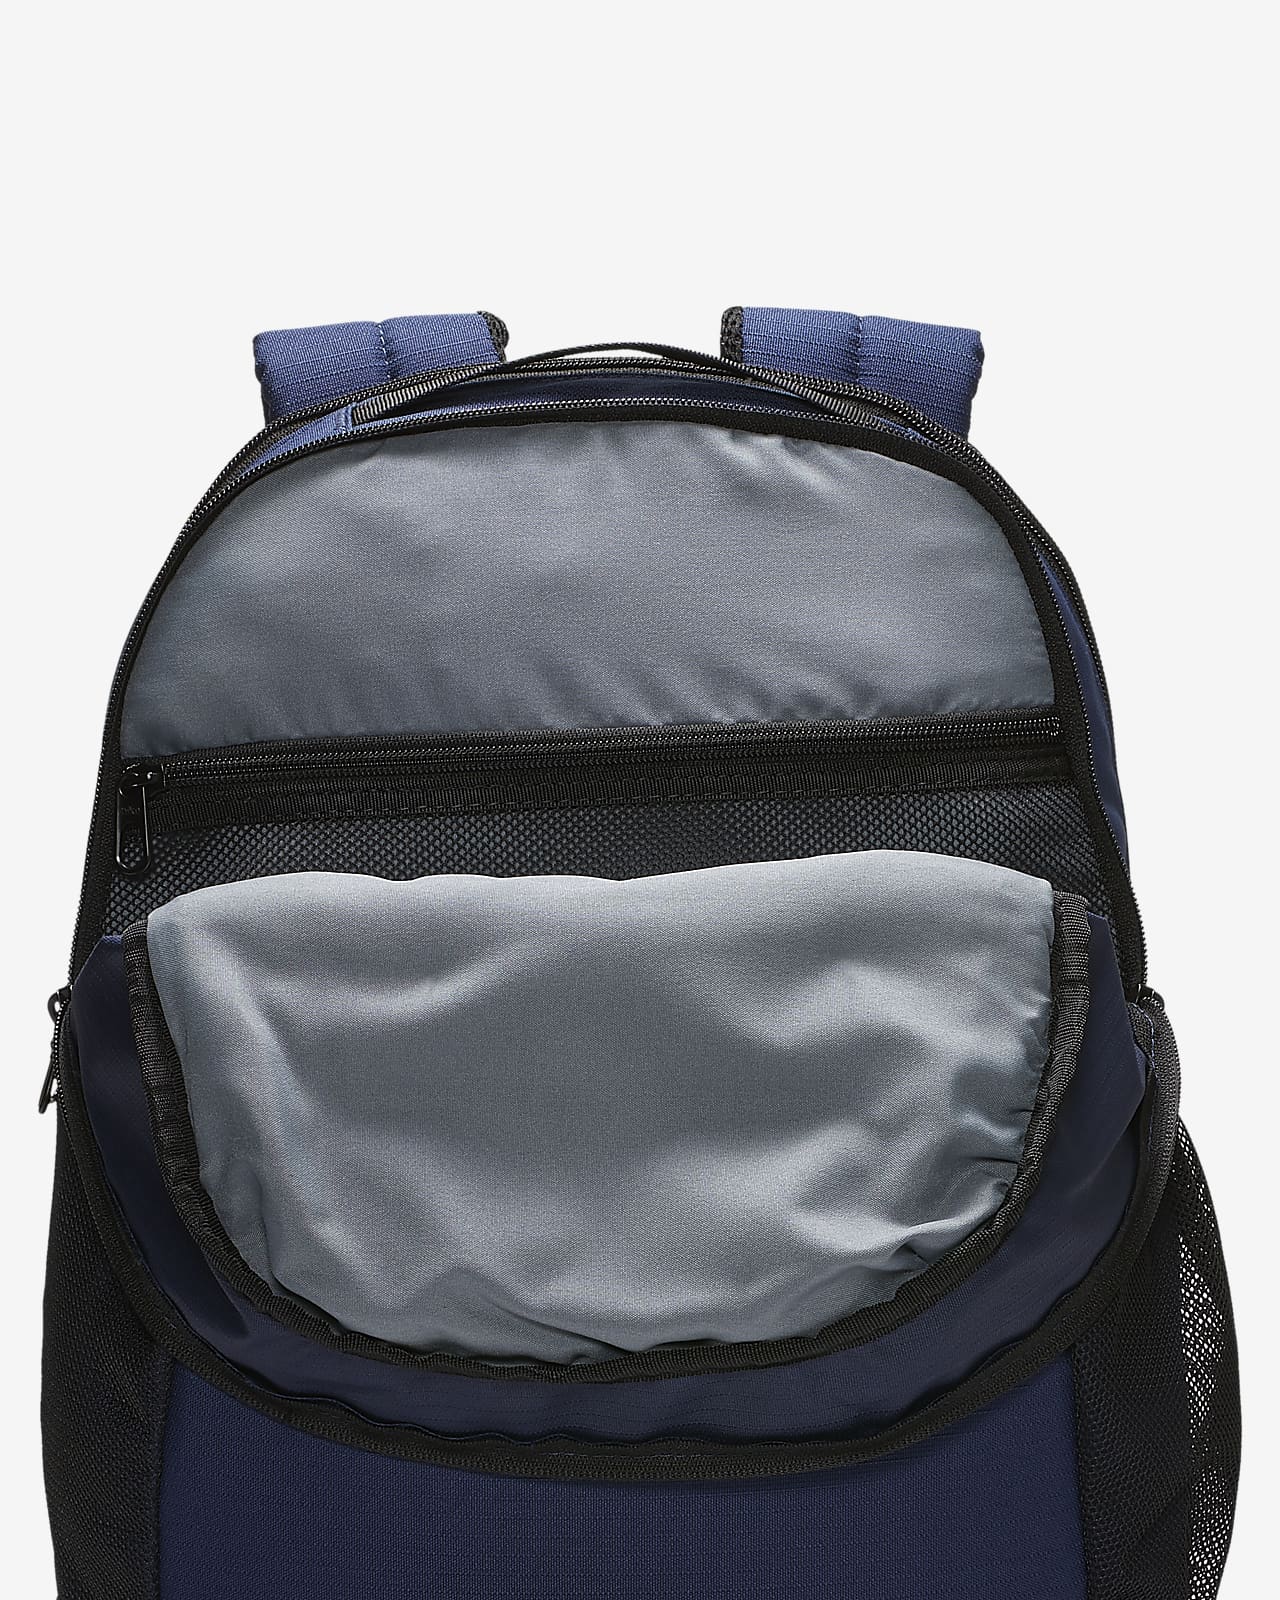 nike backpack dimensions